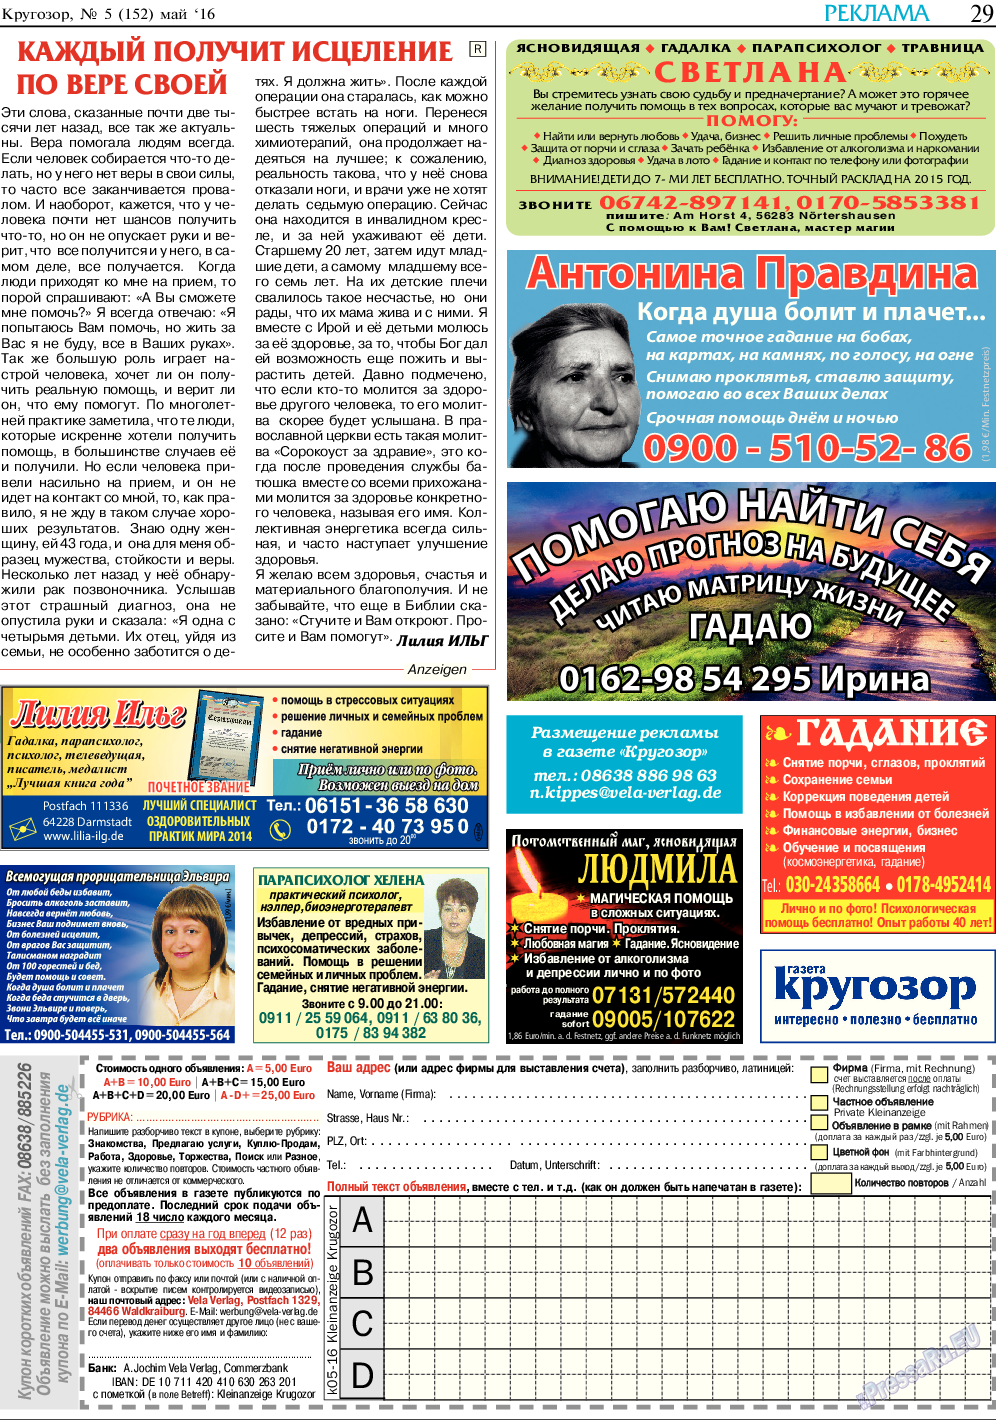 Кругозор, газета. 2016 №5 стр.29